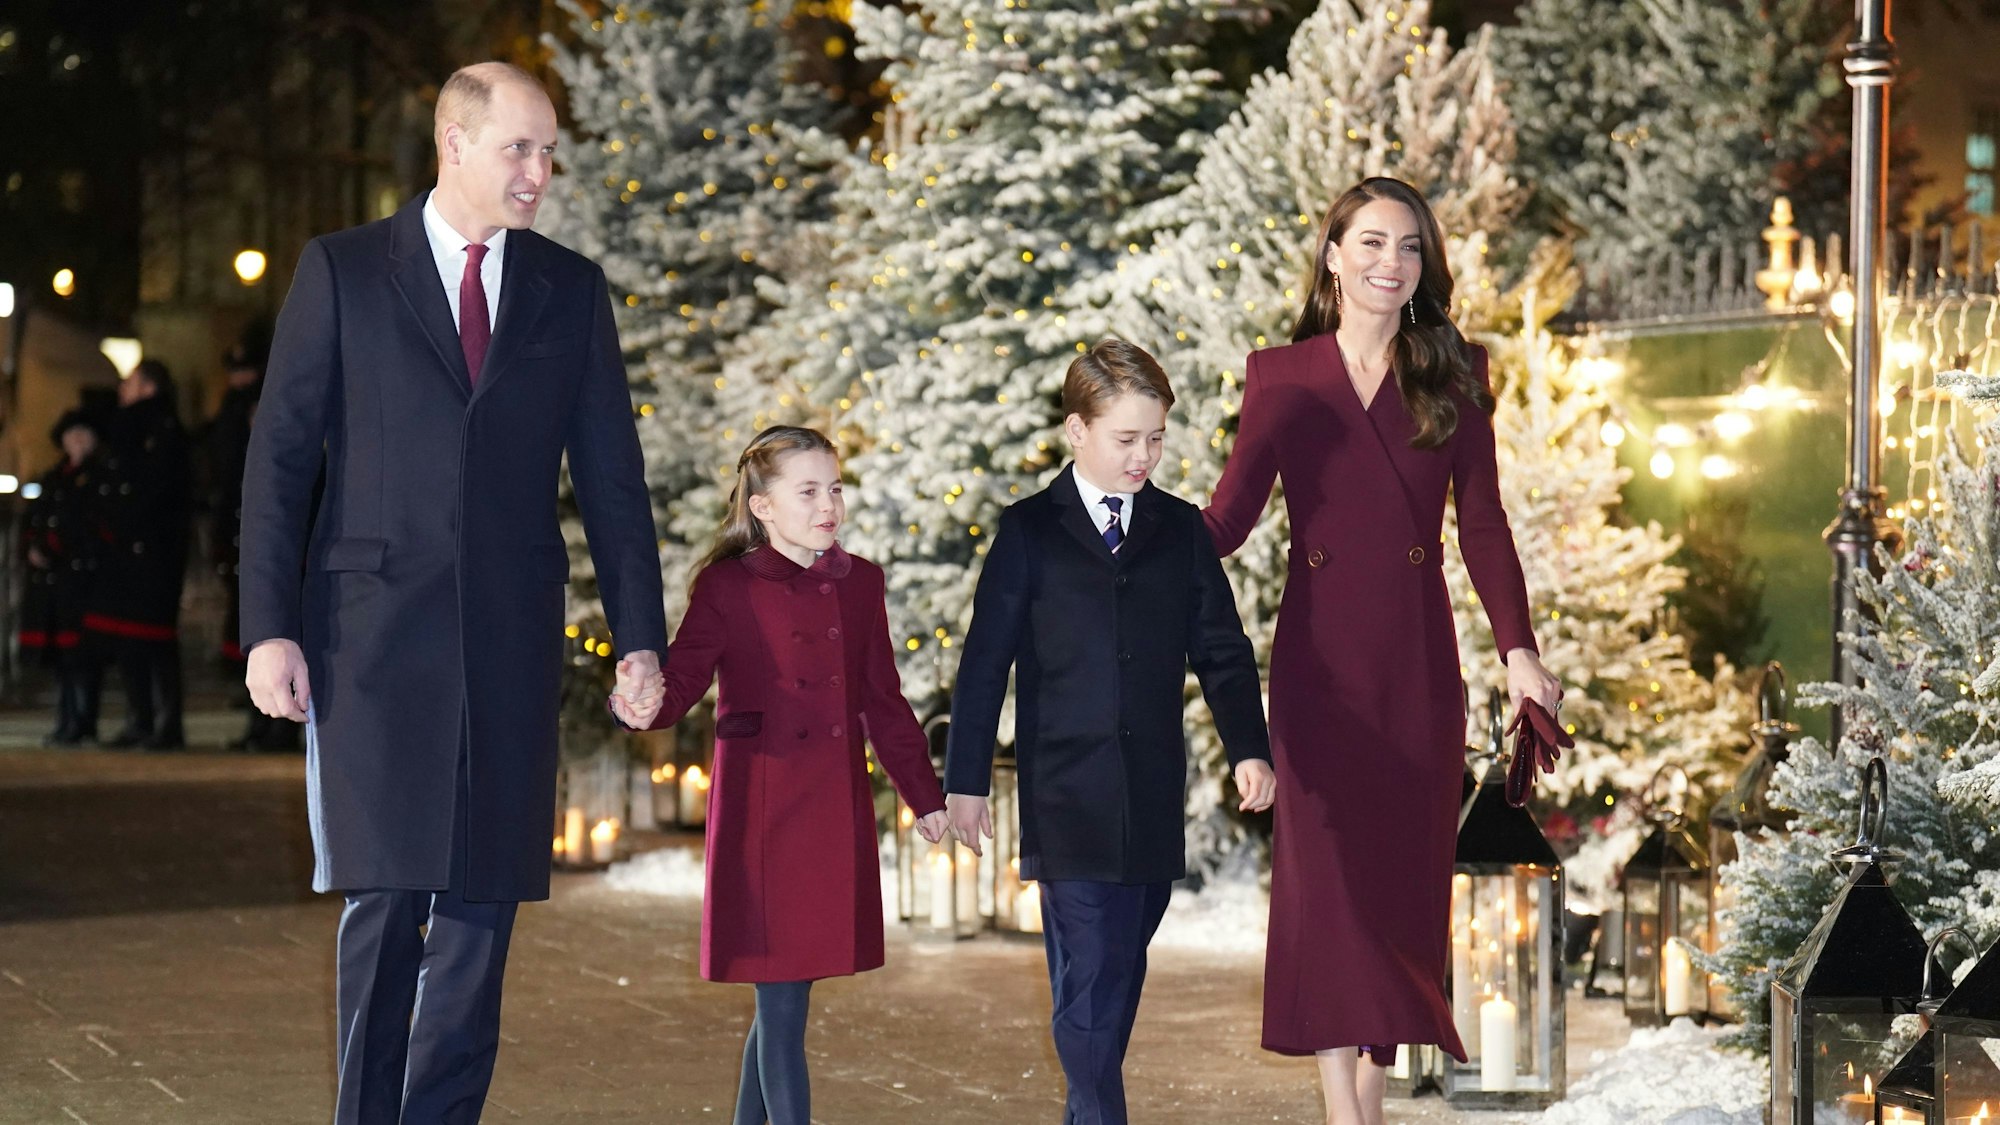 William und Kate Middleton, Prinz und Prinzessin von Wales, gehen mit ihren Kindern Prinzessin Charlotte und Prinz George. Im Hintergrund sind Weihnachtsbäume zu sehen.